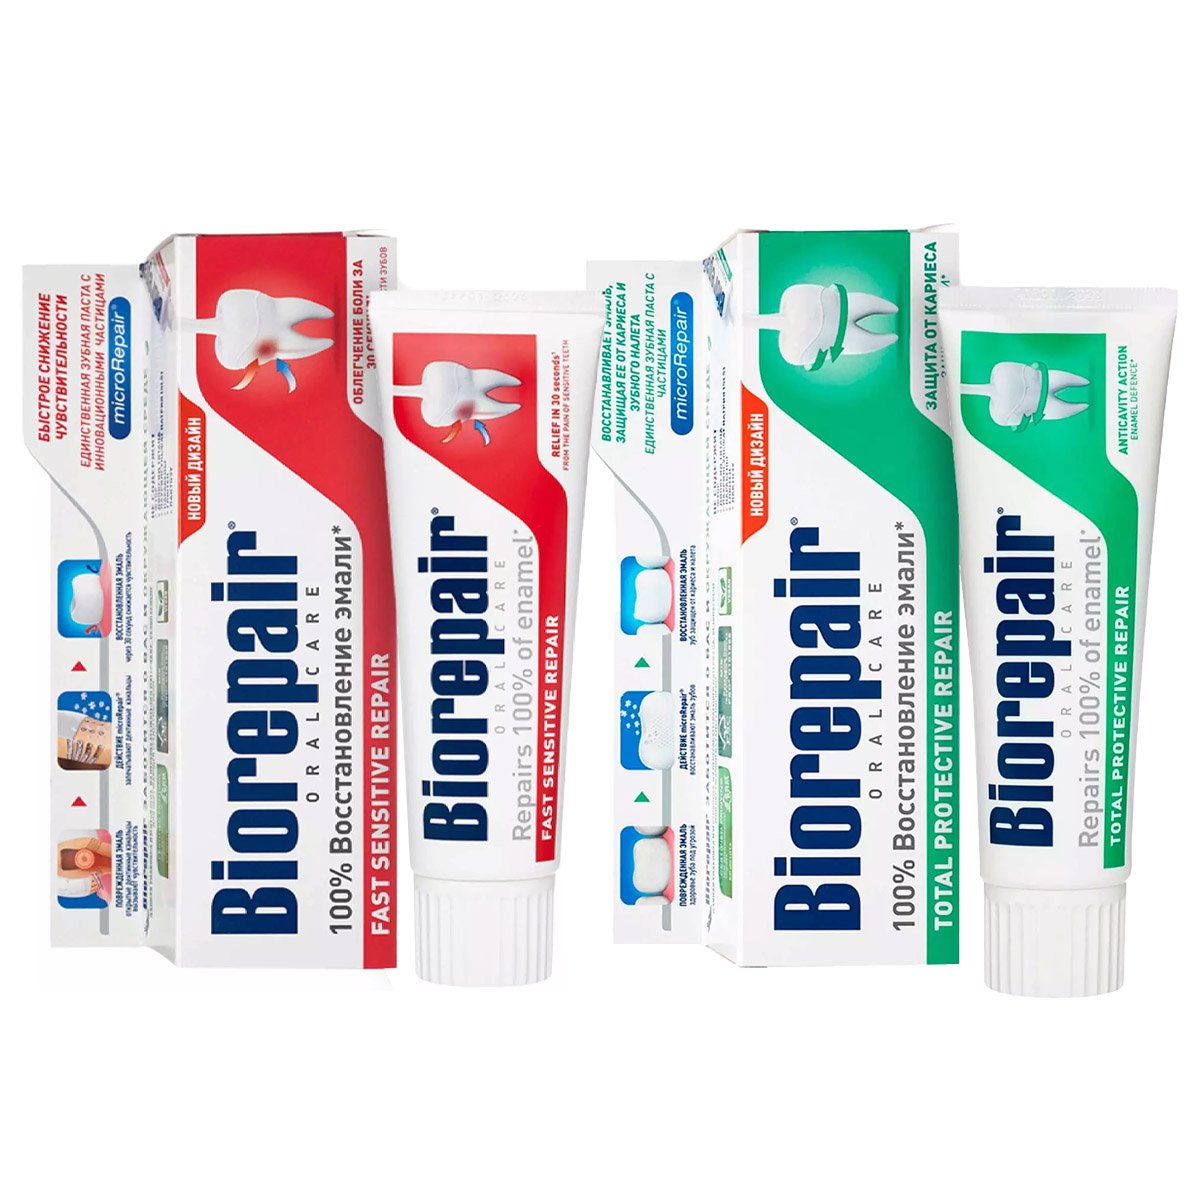 Biorepair Набор зубных паст для чувствительных зубов, 2х75 мл (Biorepair, Чувствительные зубы) цена и фото